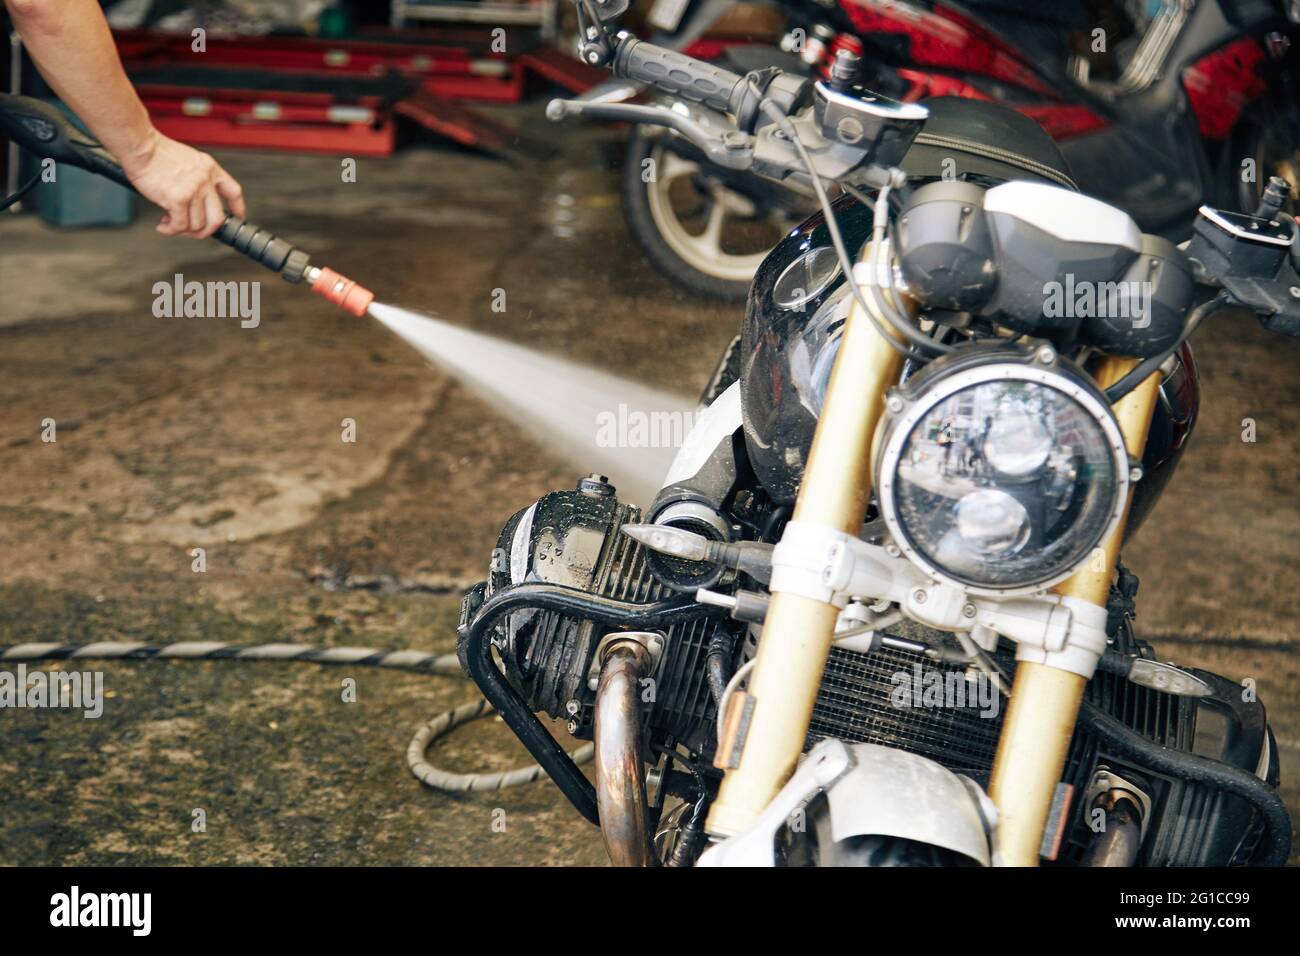 Mann, der sein Motorrad in der Garage mit Wasser spülte, nachdem er auf einer schlammigen Straße gefahren war Stockfoto